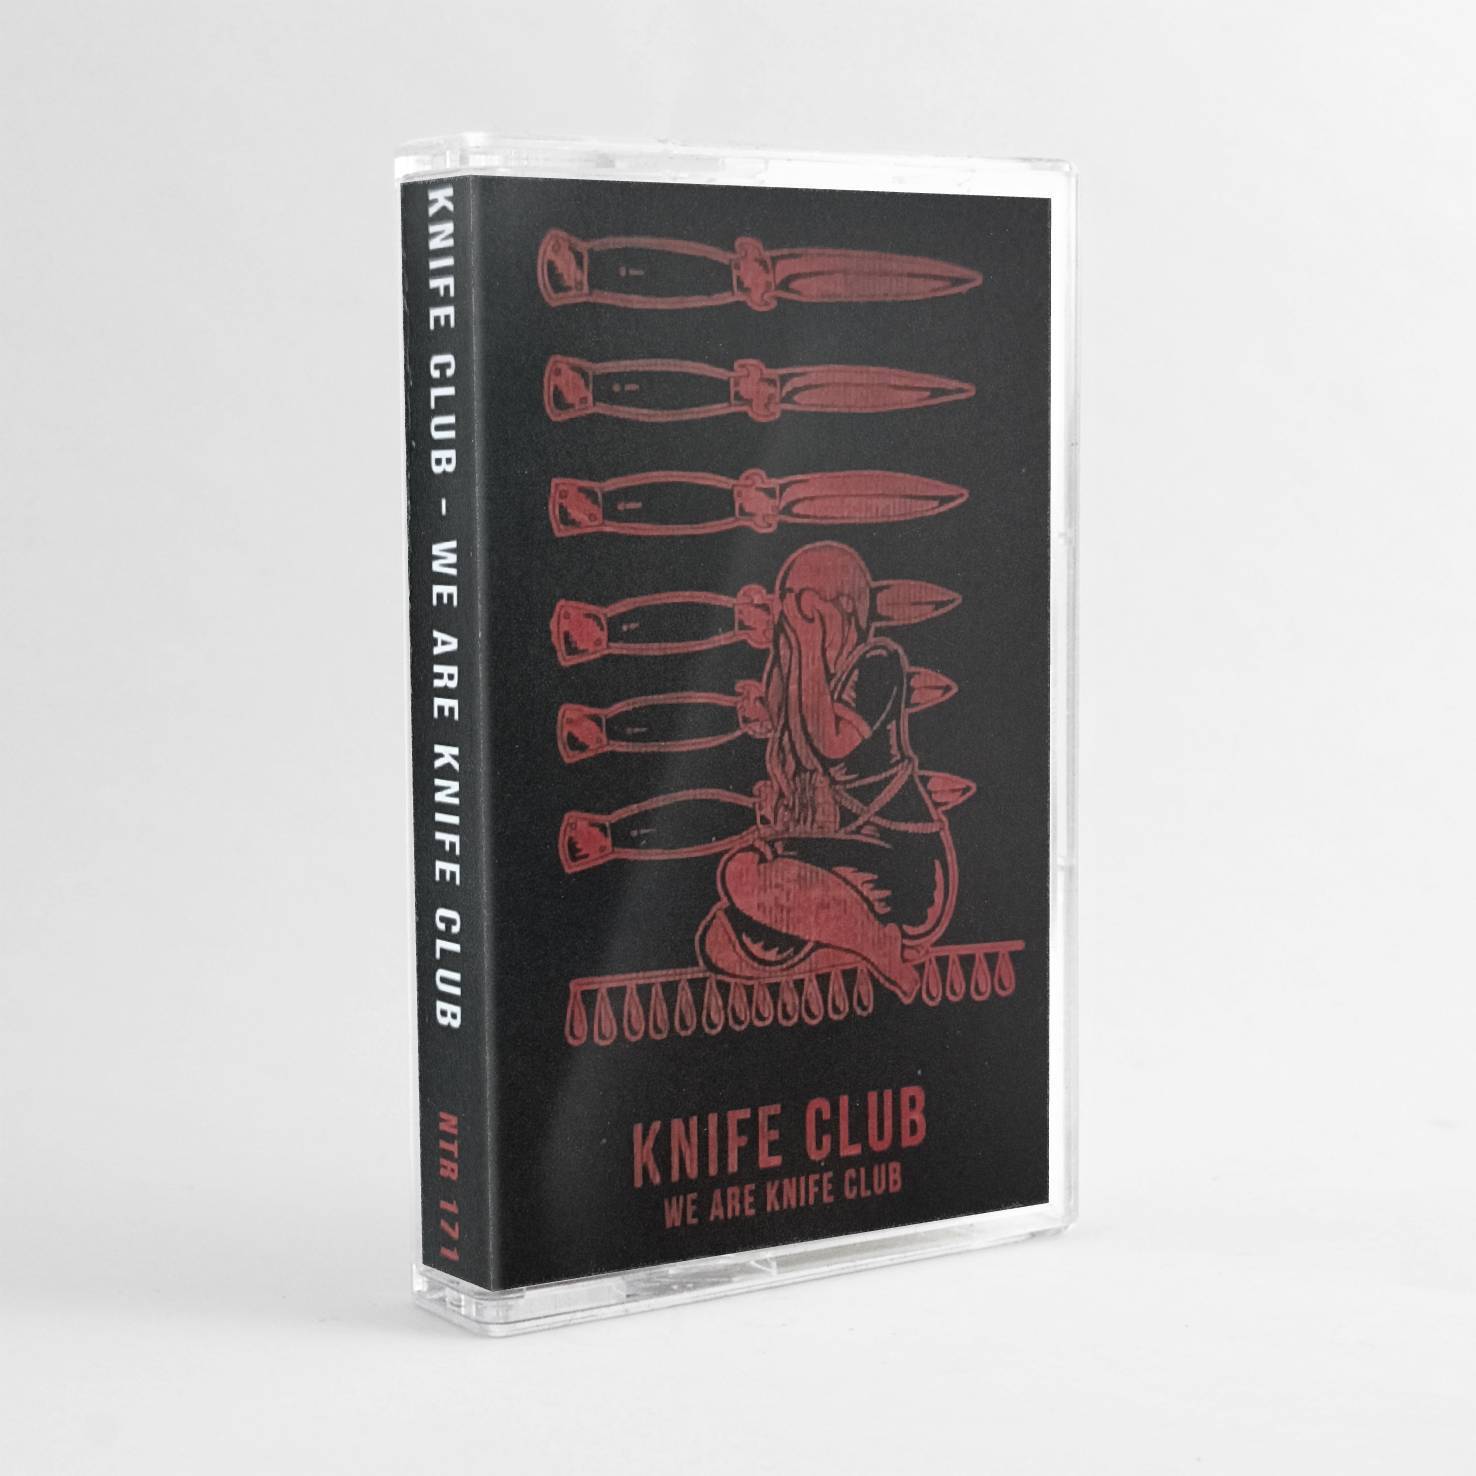 KNIFE CLUB